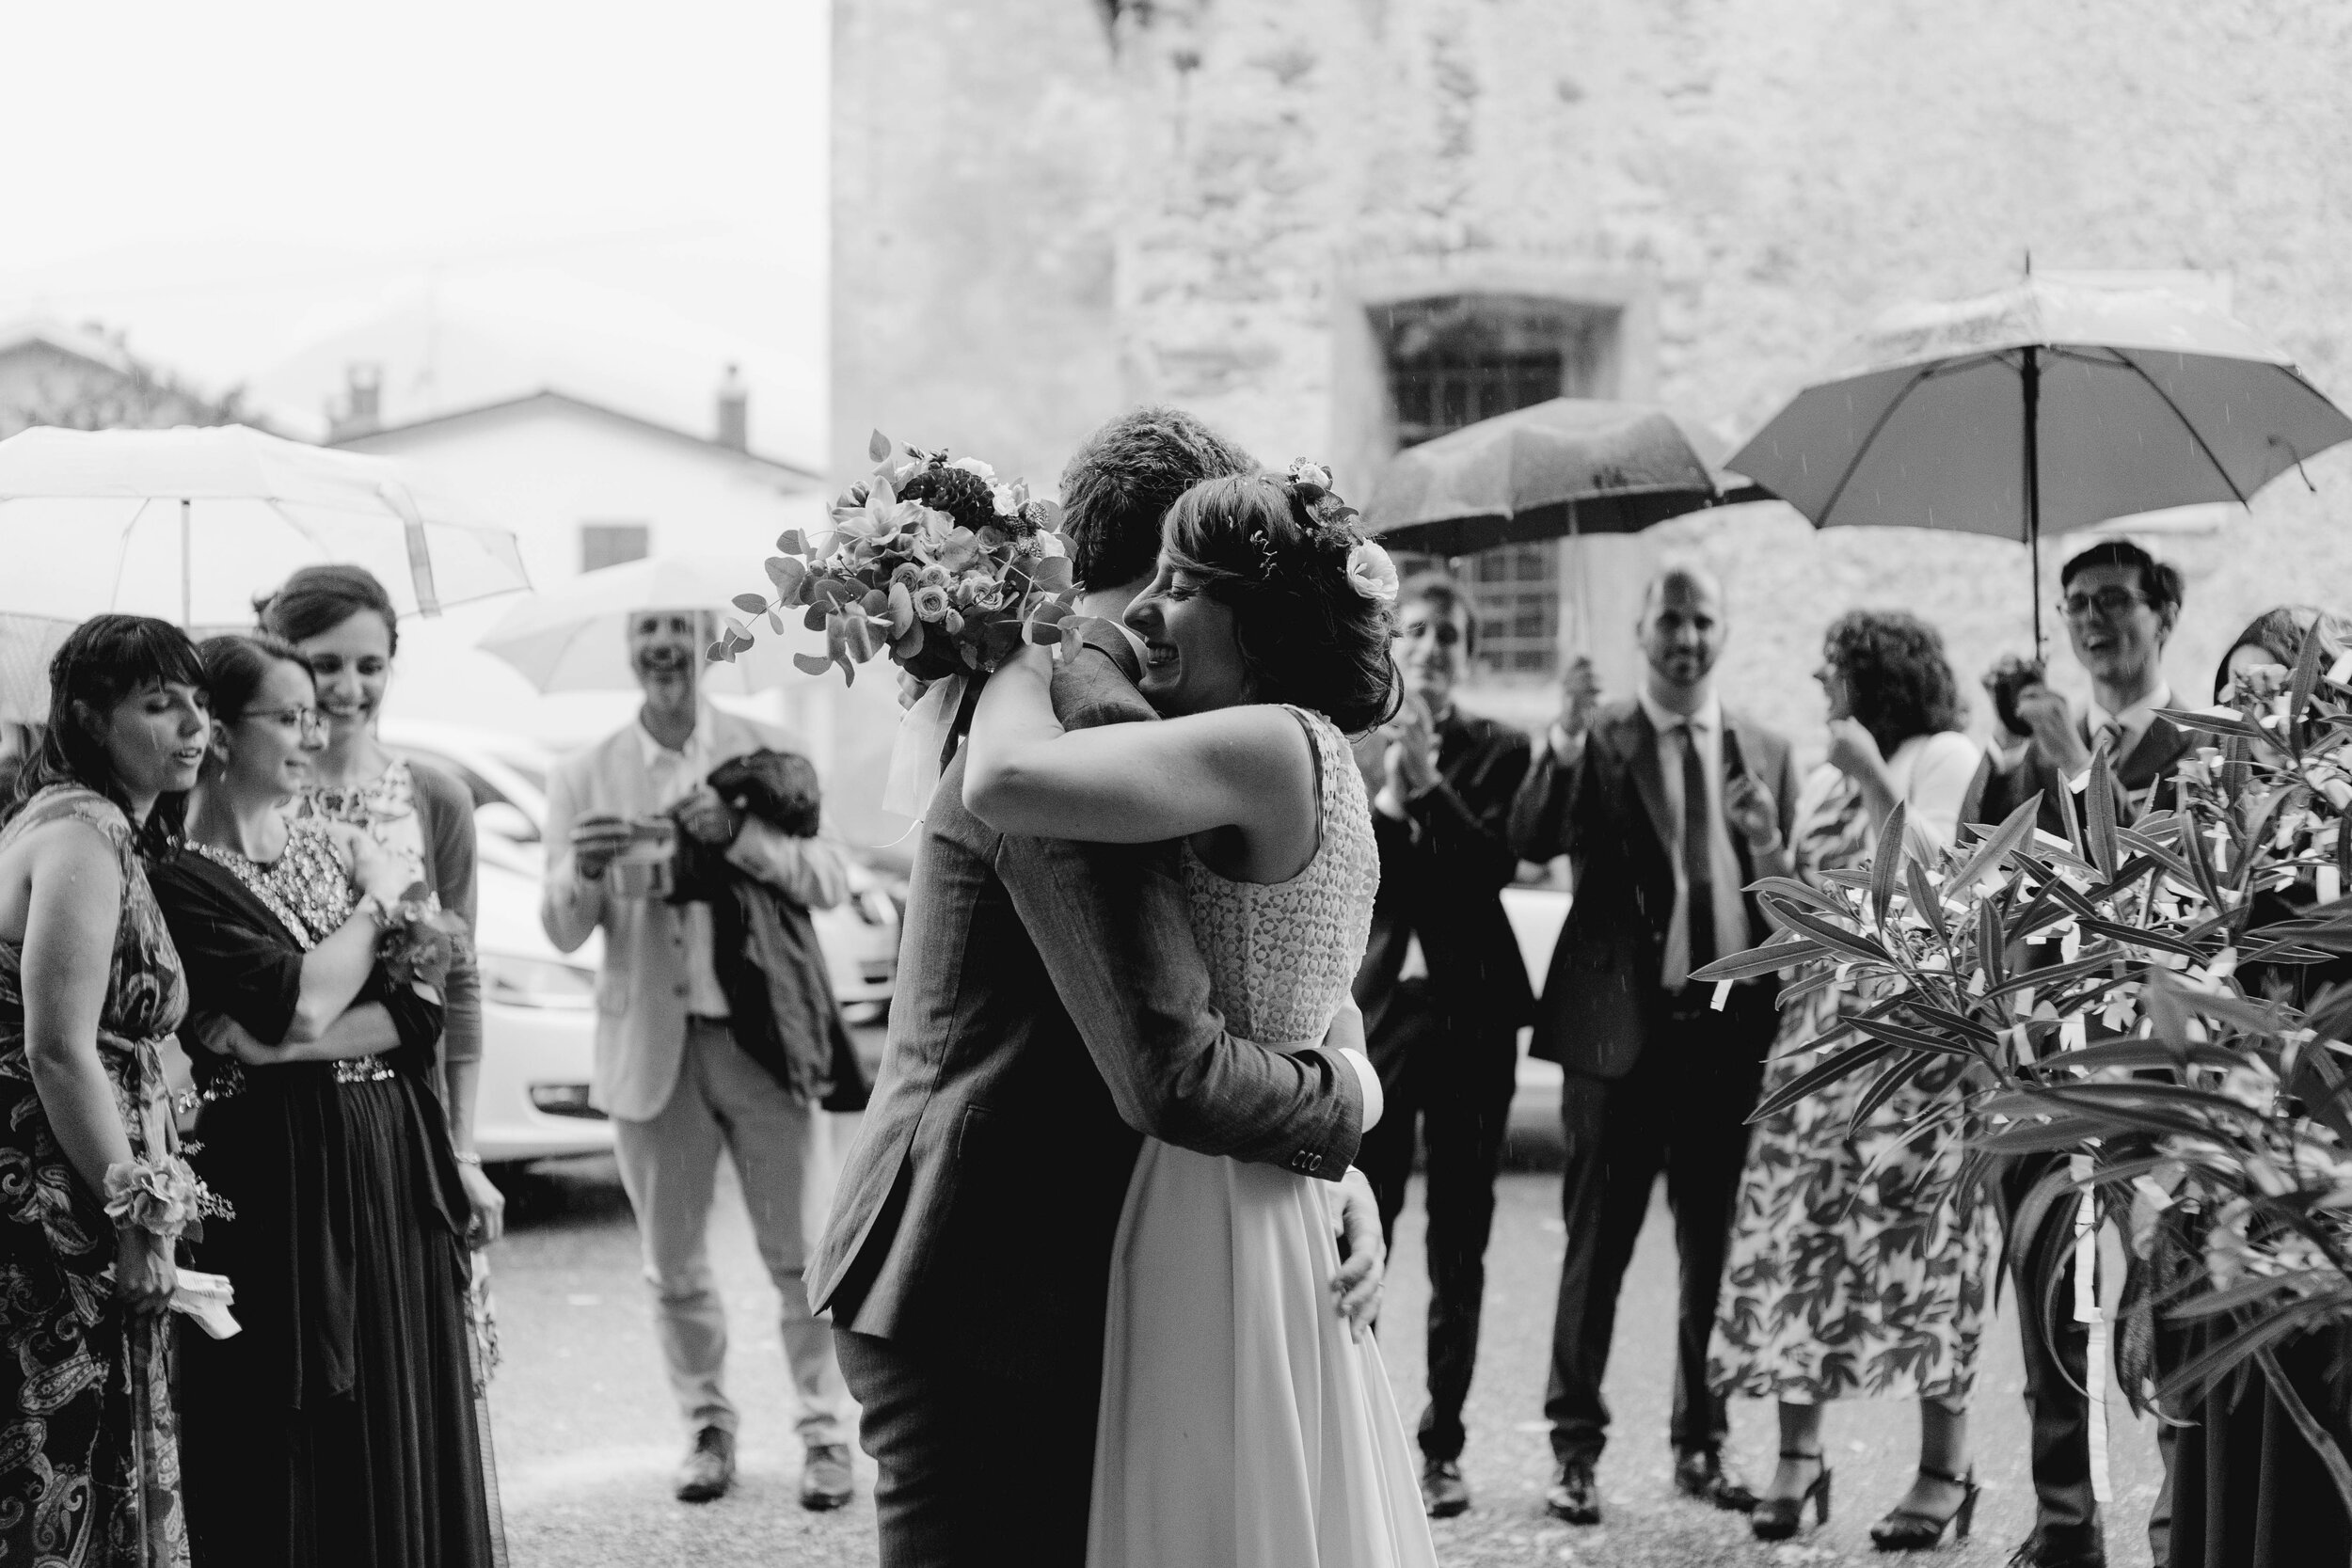 052 - Matrimonio in provincia di Cuneo - Miriam Callegari Fotografa.JPG